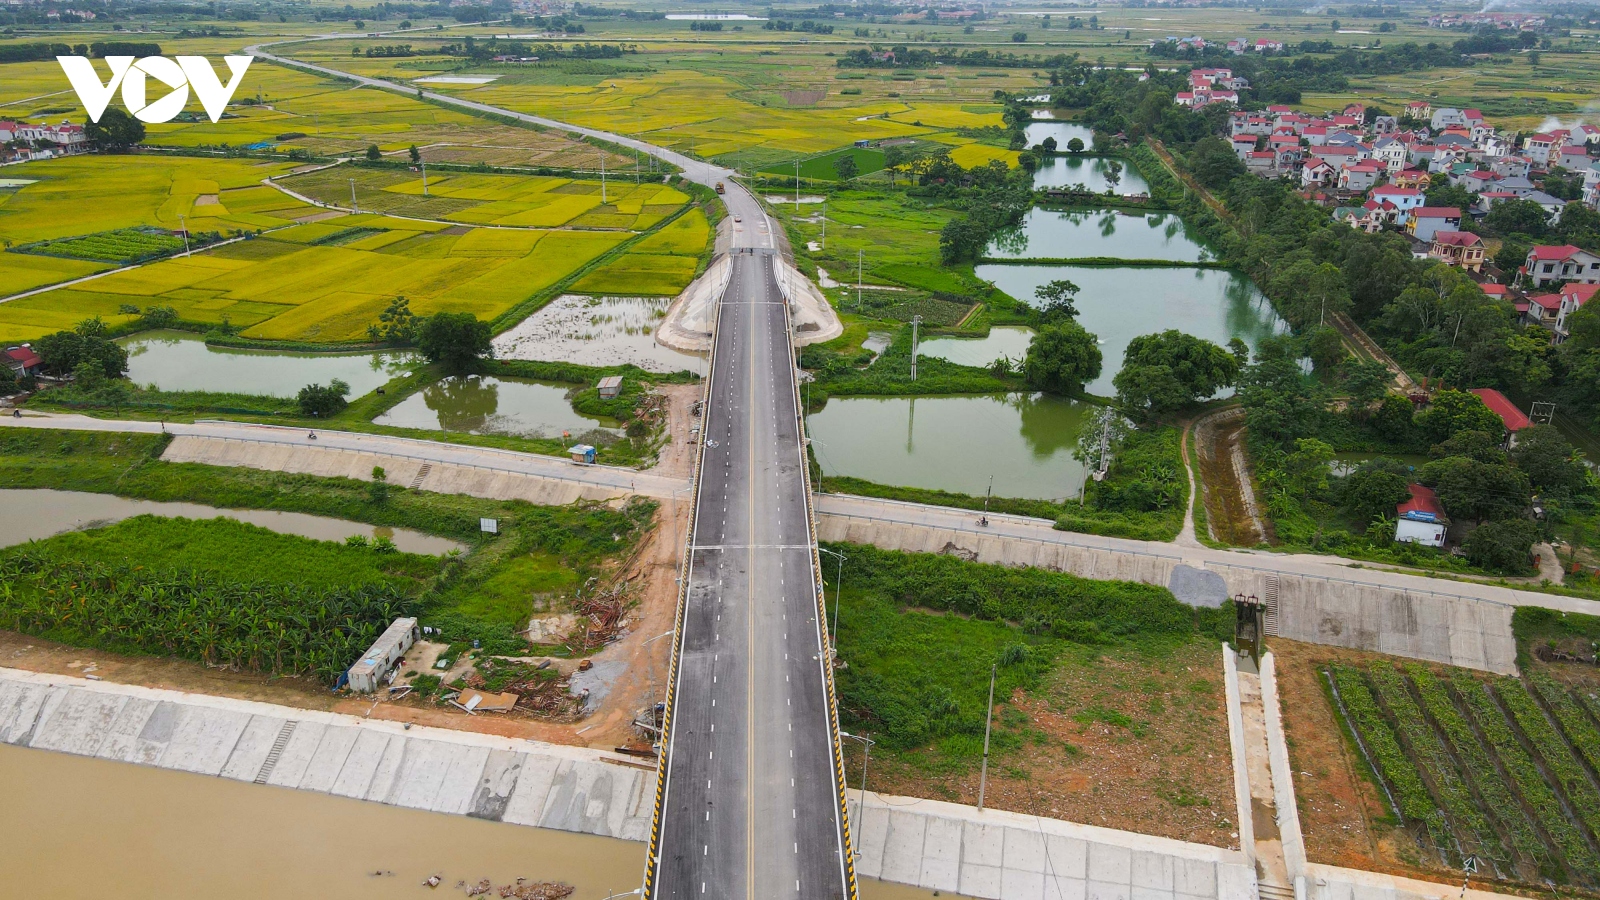 Cầu Hà Bắc 2 nối Bắc Giang - Bắc Ninh gần 400 tỷ đắp chiếu, dân đi đò qua sông